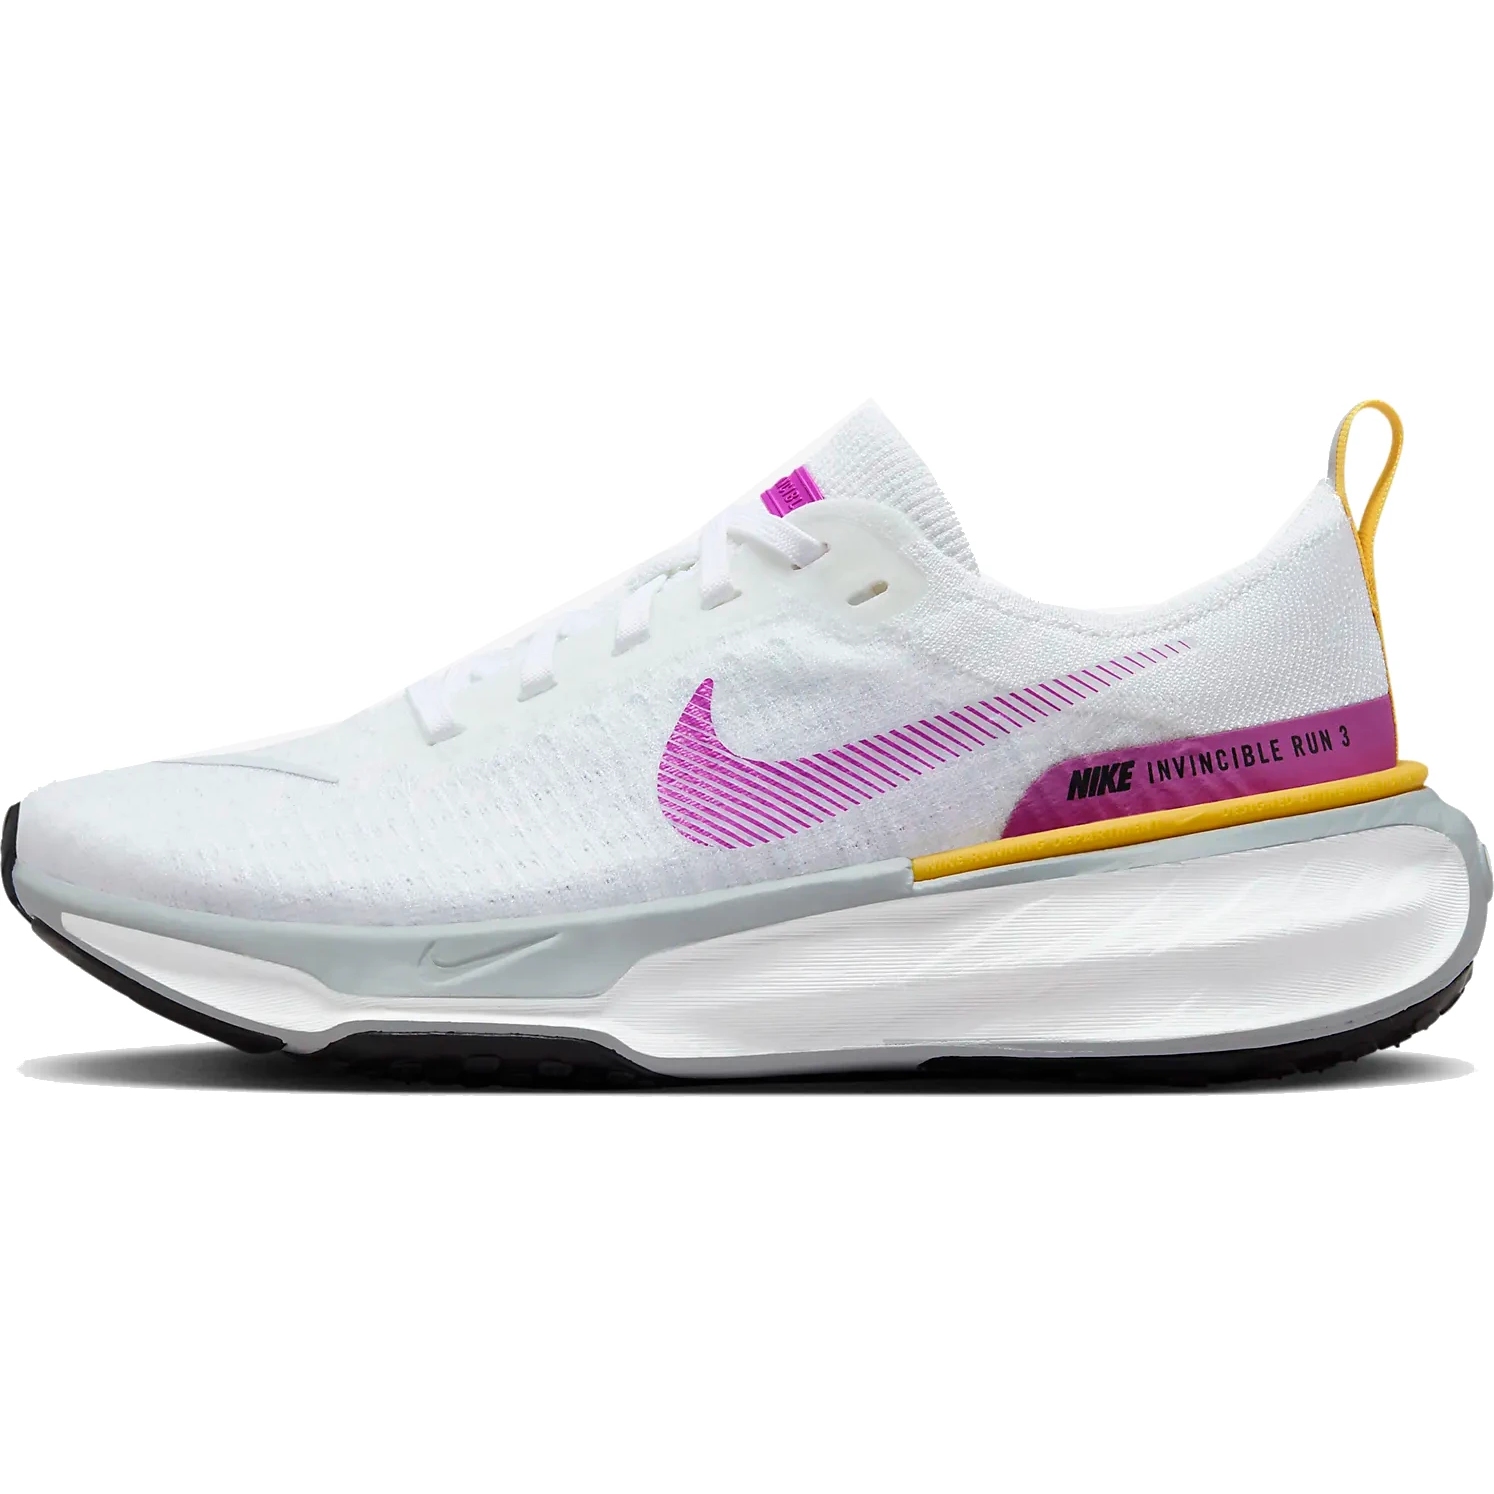 Immagine di Nike Scarpe da Corsa Donna - Invincible 3 - white/vivid purple-vivid sulfur DR2660-101